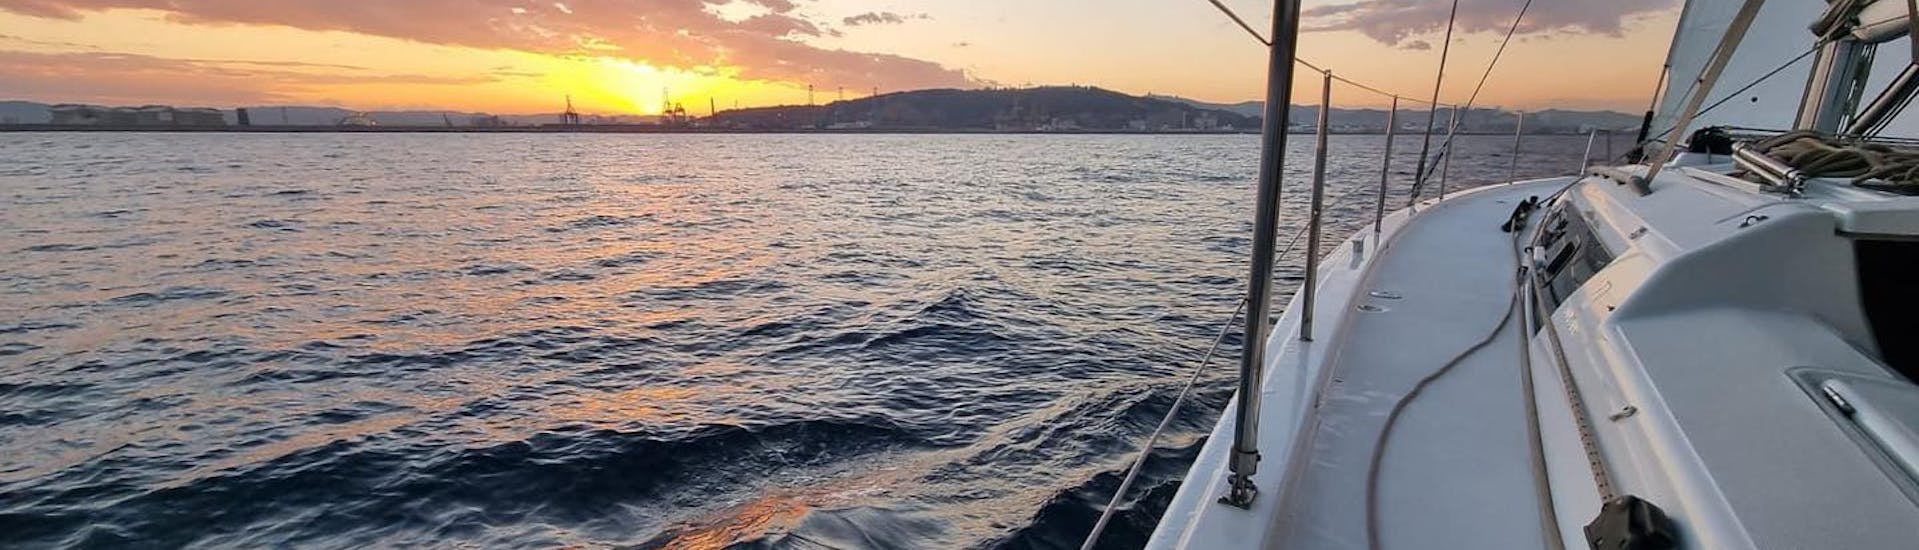 Le voilier navigue sous le coucher de soleil lors de la Balade en voilier au coucher de soleil de Palma avec Open Bar, SUP & Snorkeling avec SeaBarcelona - Sailing Balearic.